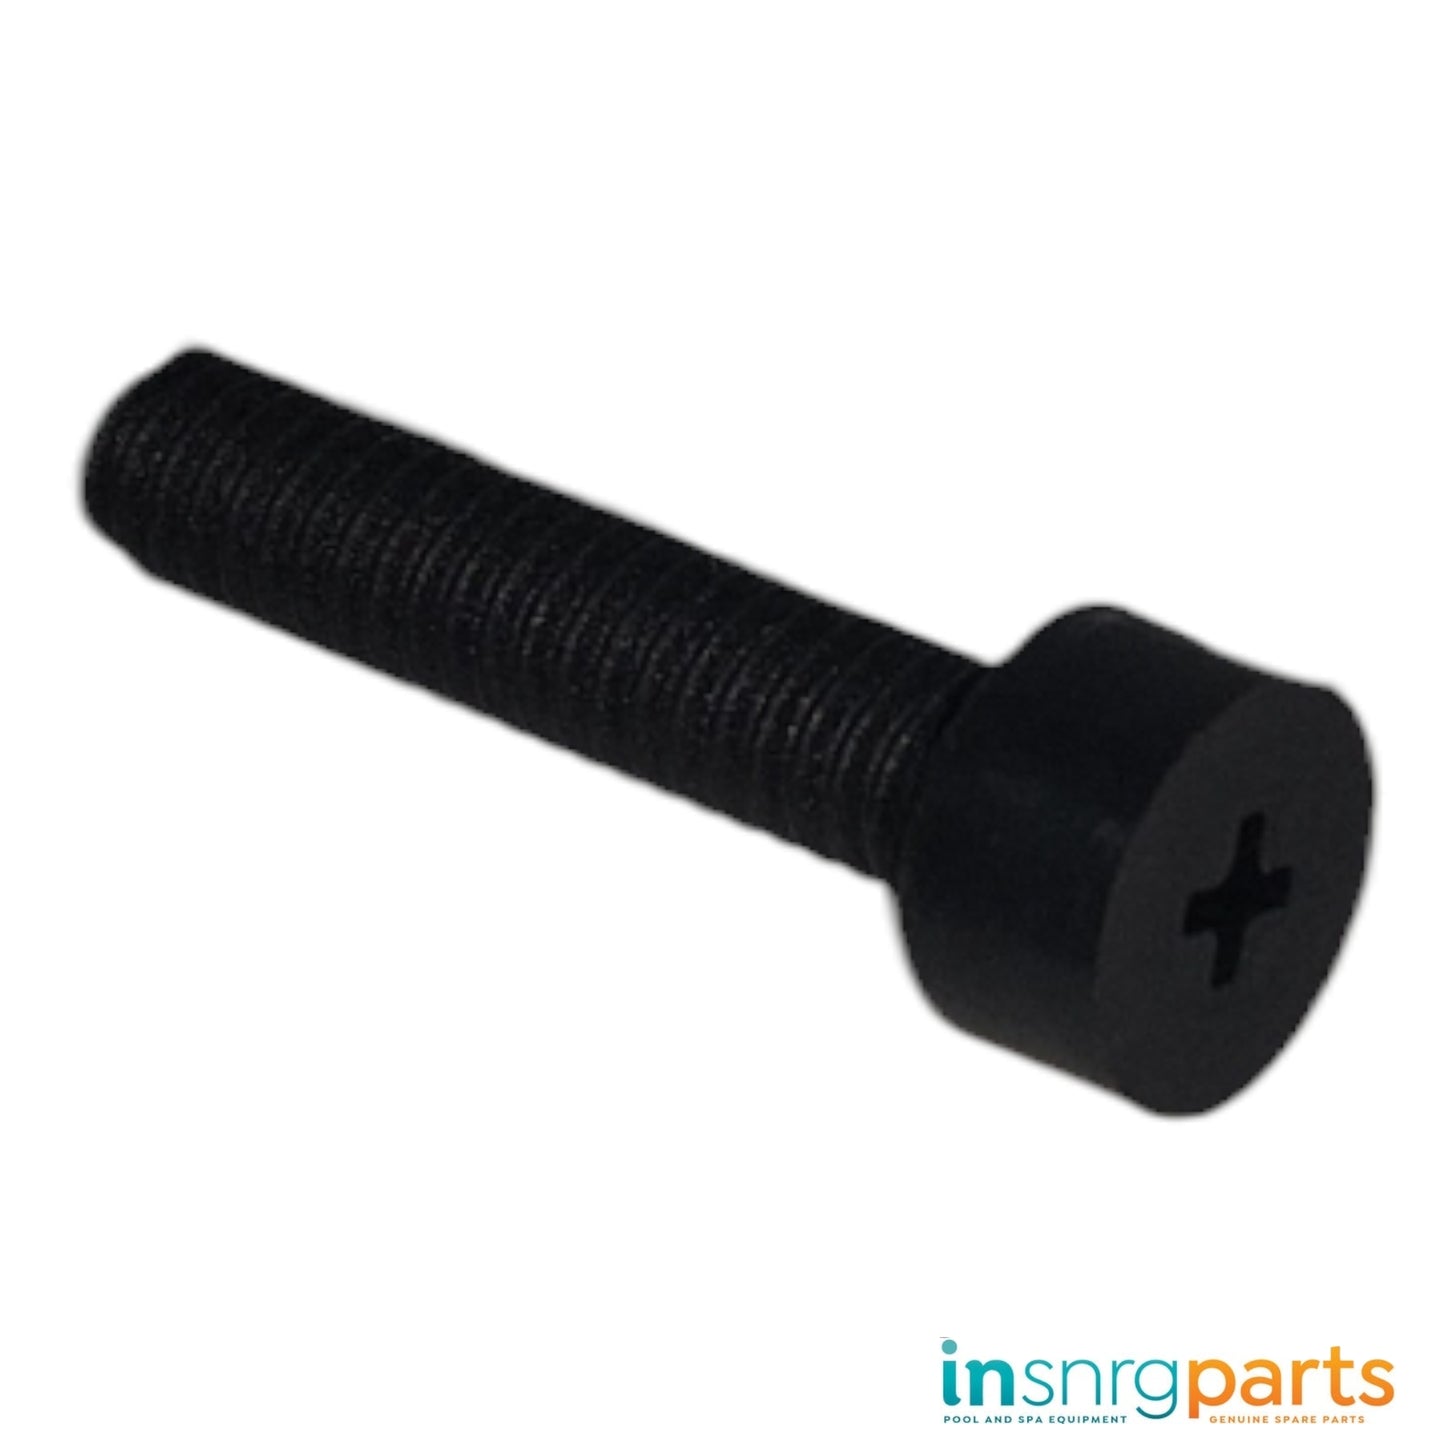 Impeller Screw (Nylon) - LEFT Hand Thread - Insnrg Pumps [241014050]